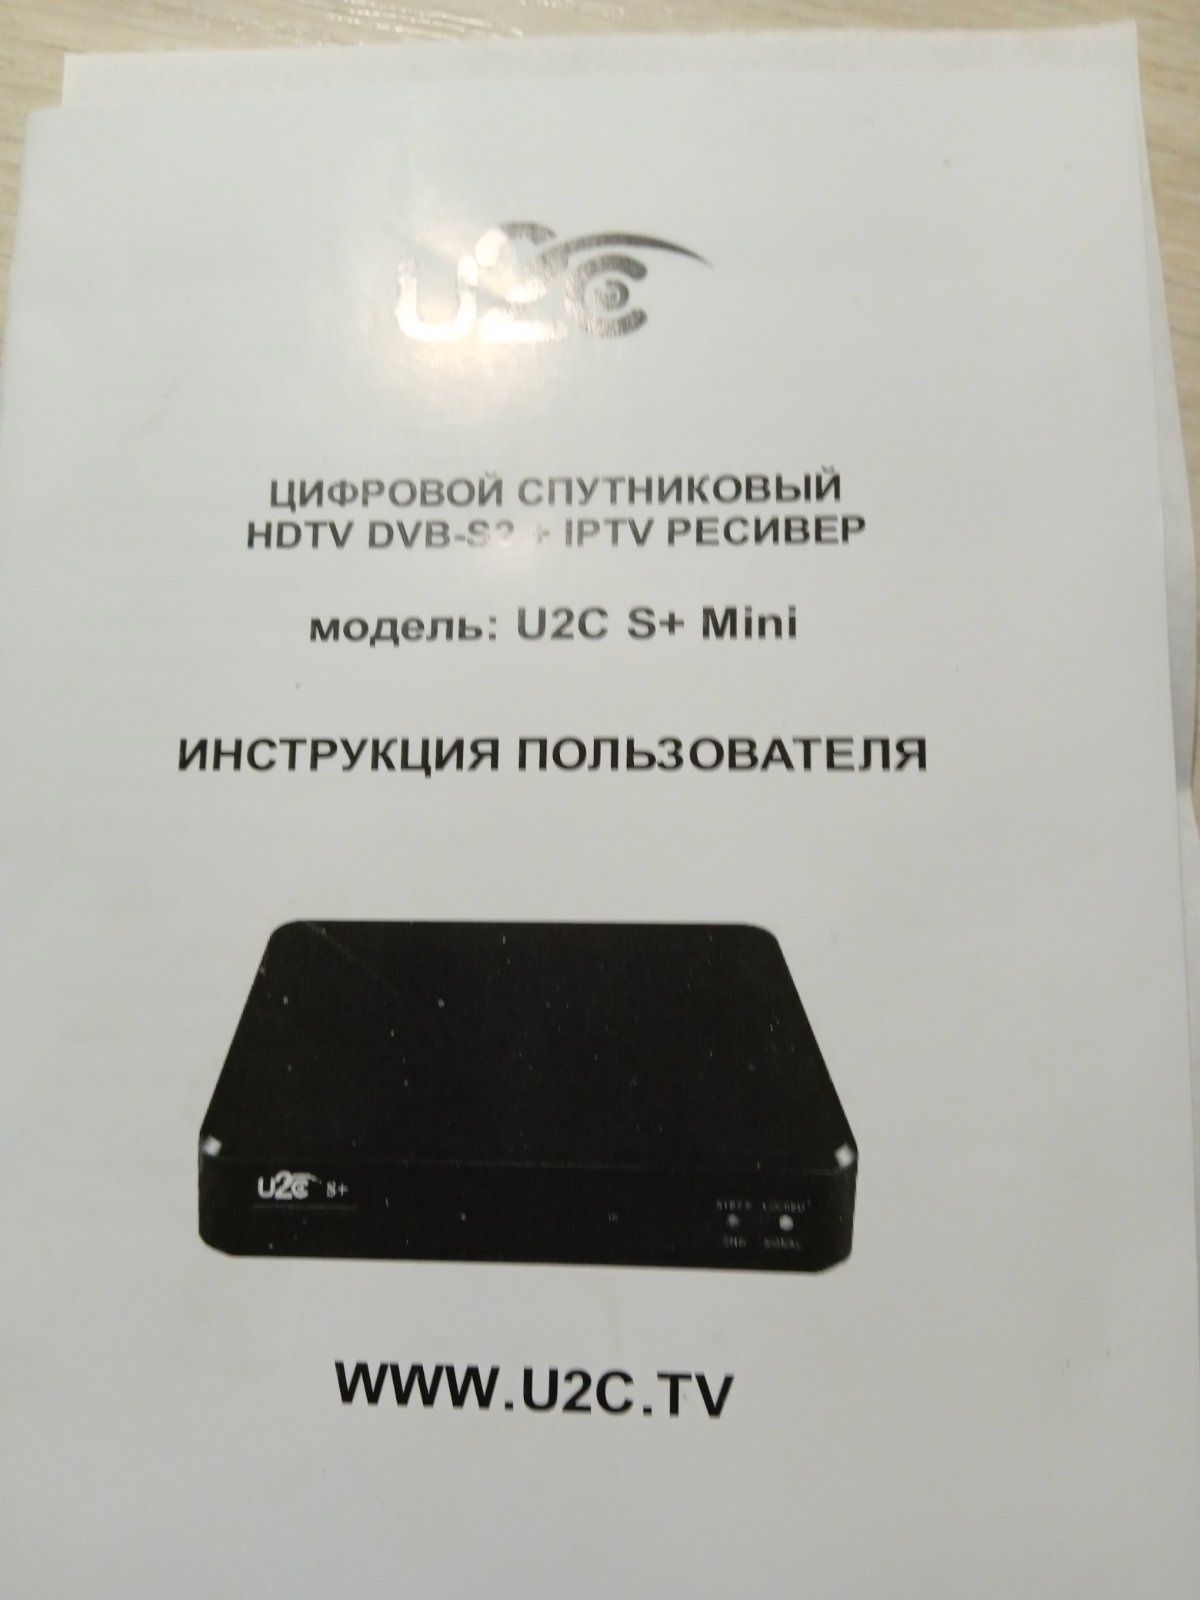 Спутниковая тарелка + ресивер U2C S+ MiniHD